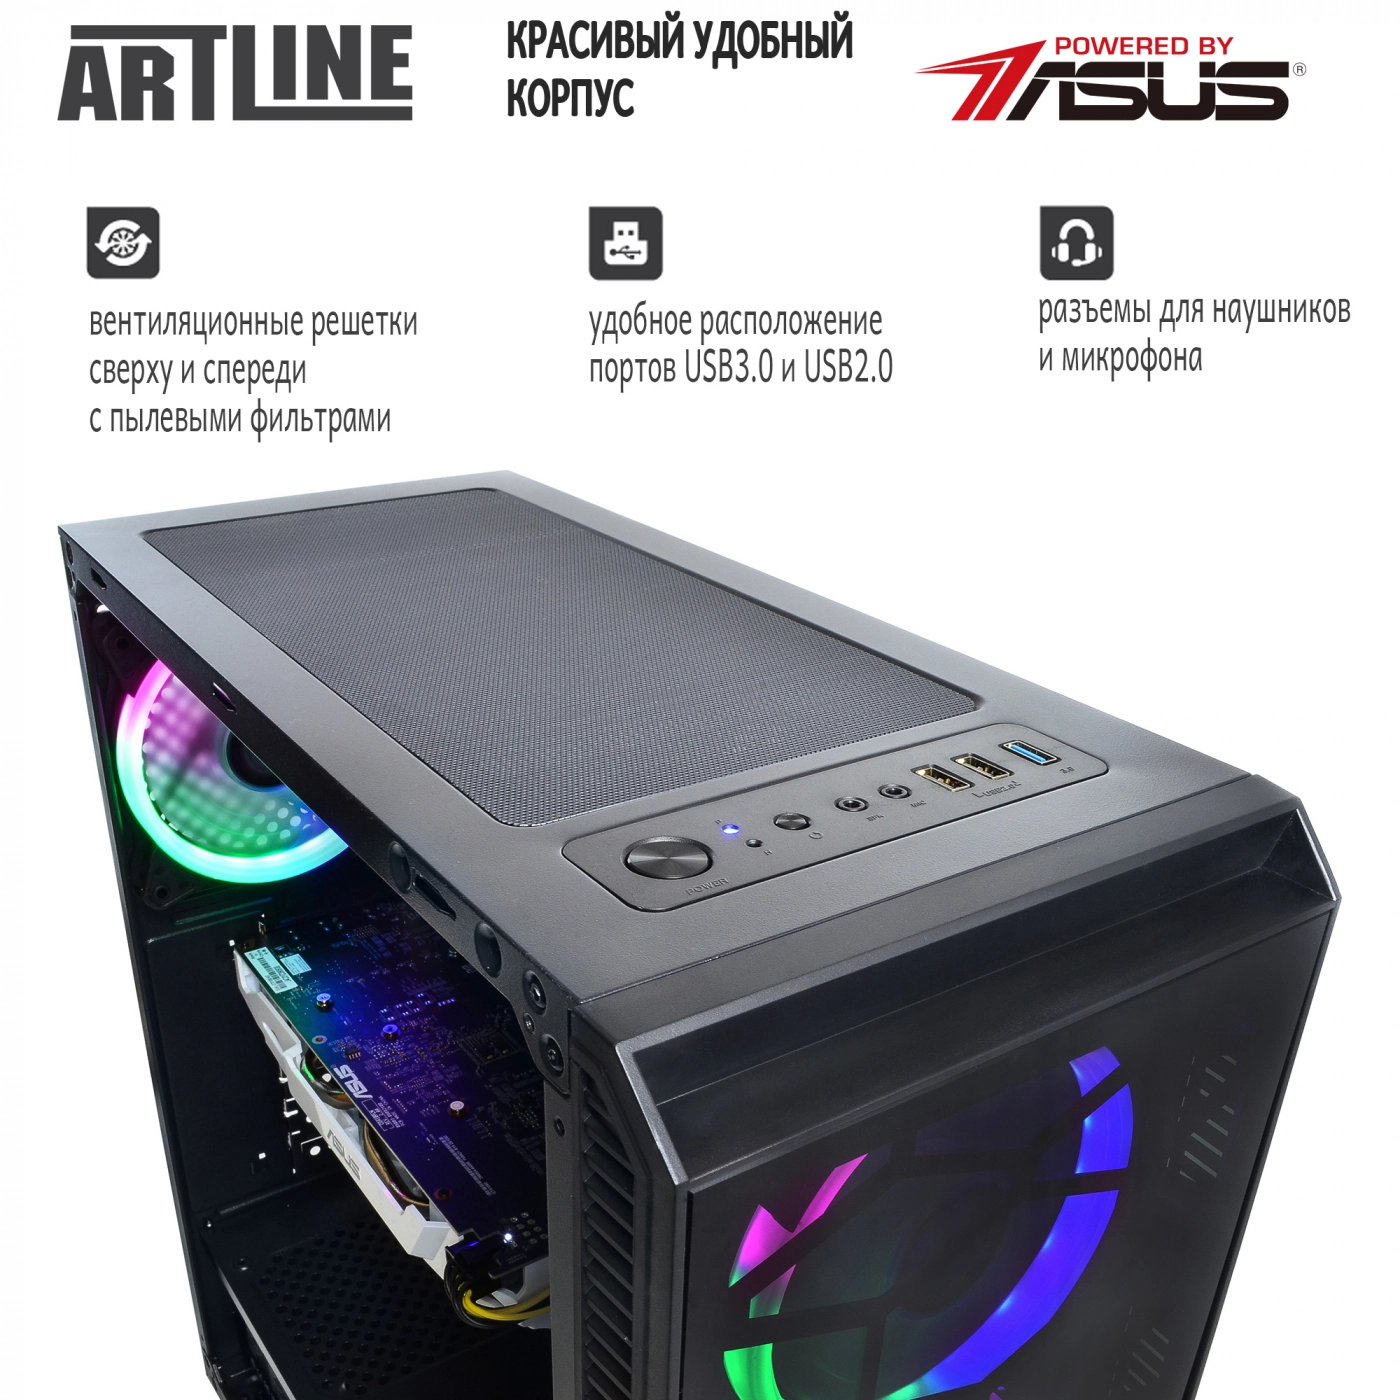 Купить Компьютер ARTLINE Gaming X43v06 - фото 4